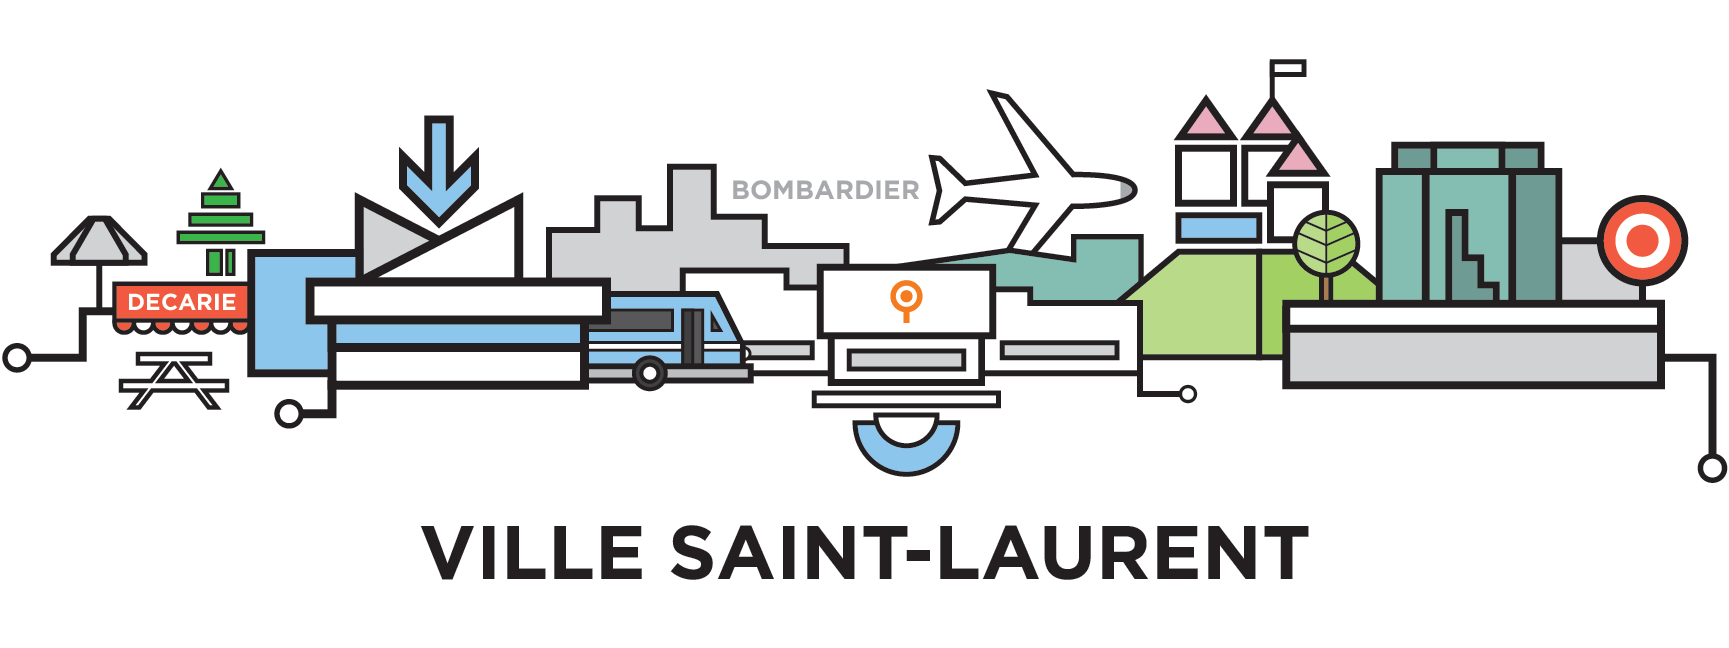 mtl-ville-saint-laurent-cityline-illustration-by-loogart